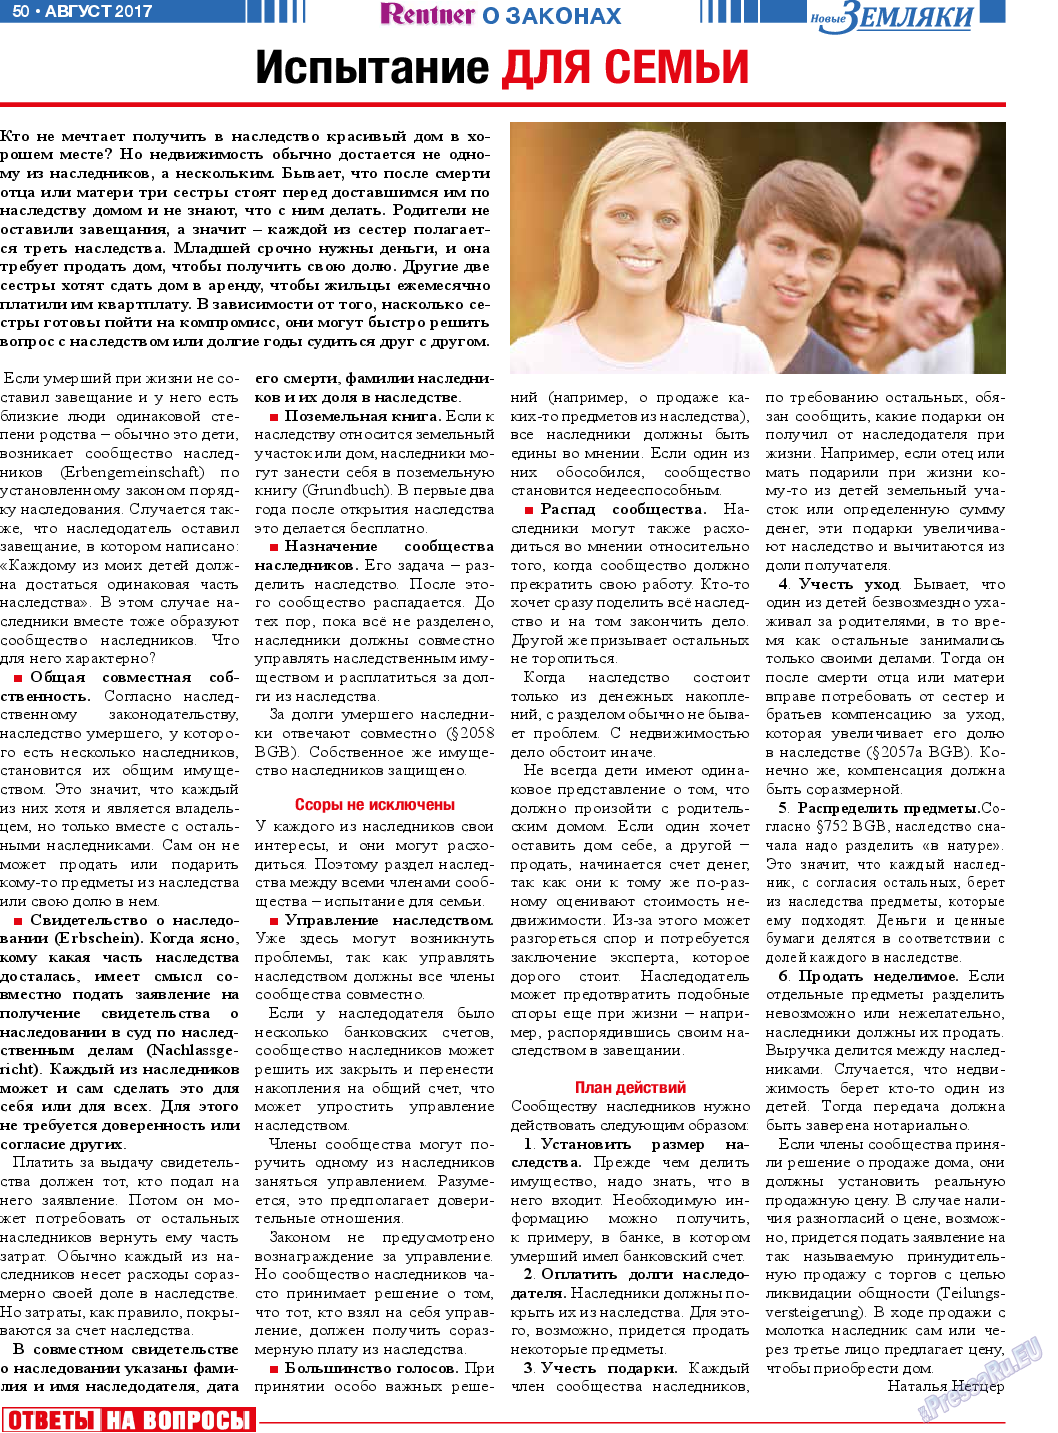 Новые Земляки (газета). 2017 год, номер 8, стр. 50